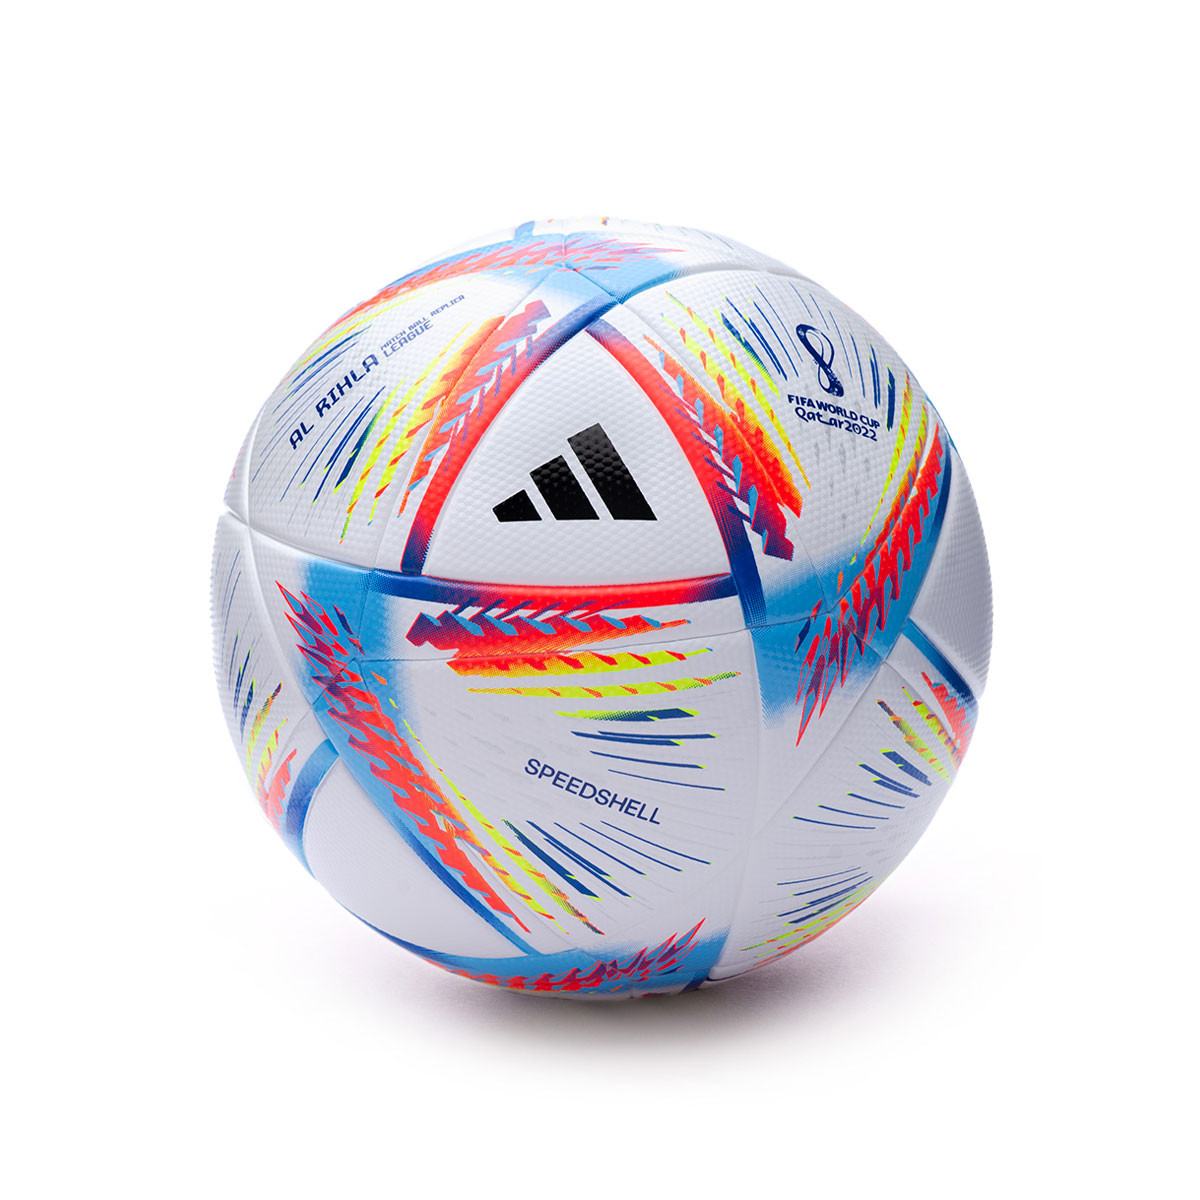 Offizielles Merchandise Kinder Fußball-Set Geschenk Tottenham Hotspur FC Größe 4 Torwarthandschuhe & Fußball